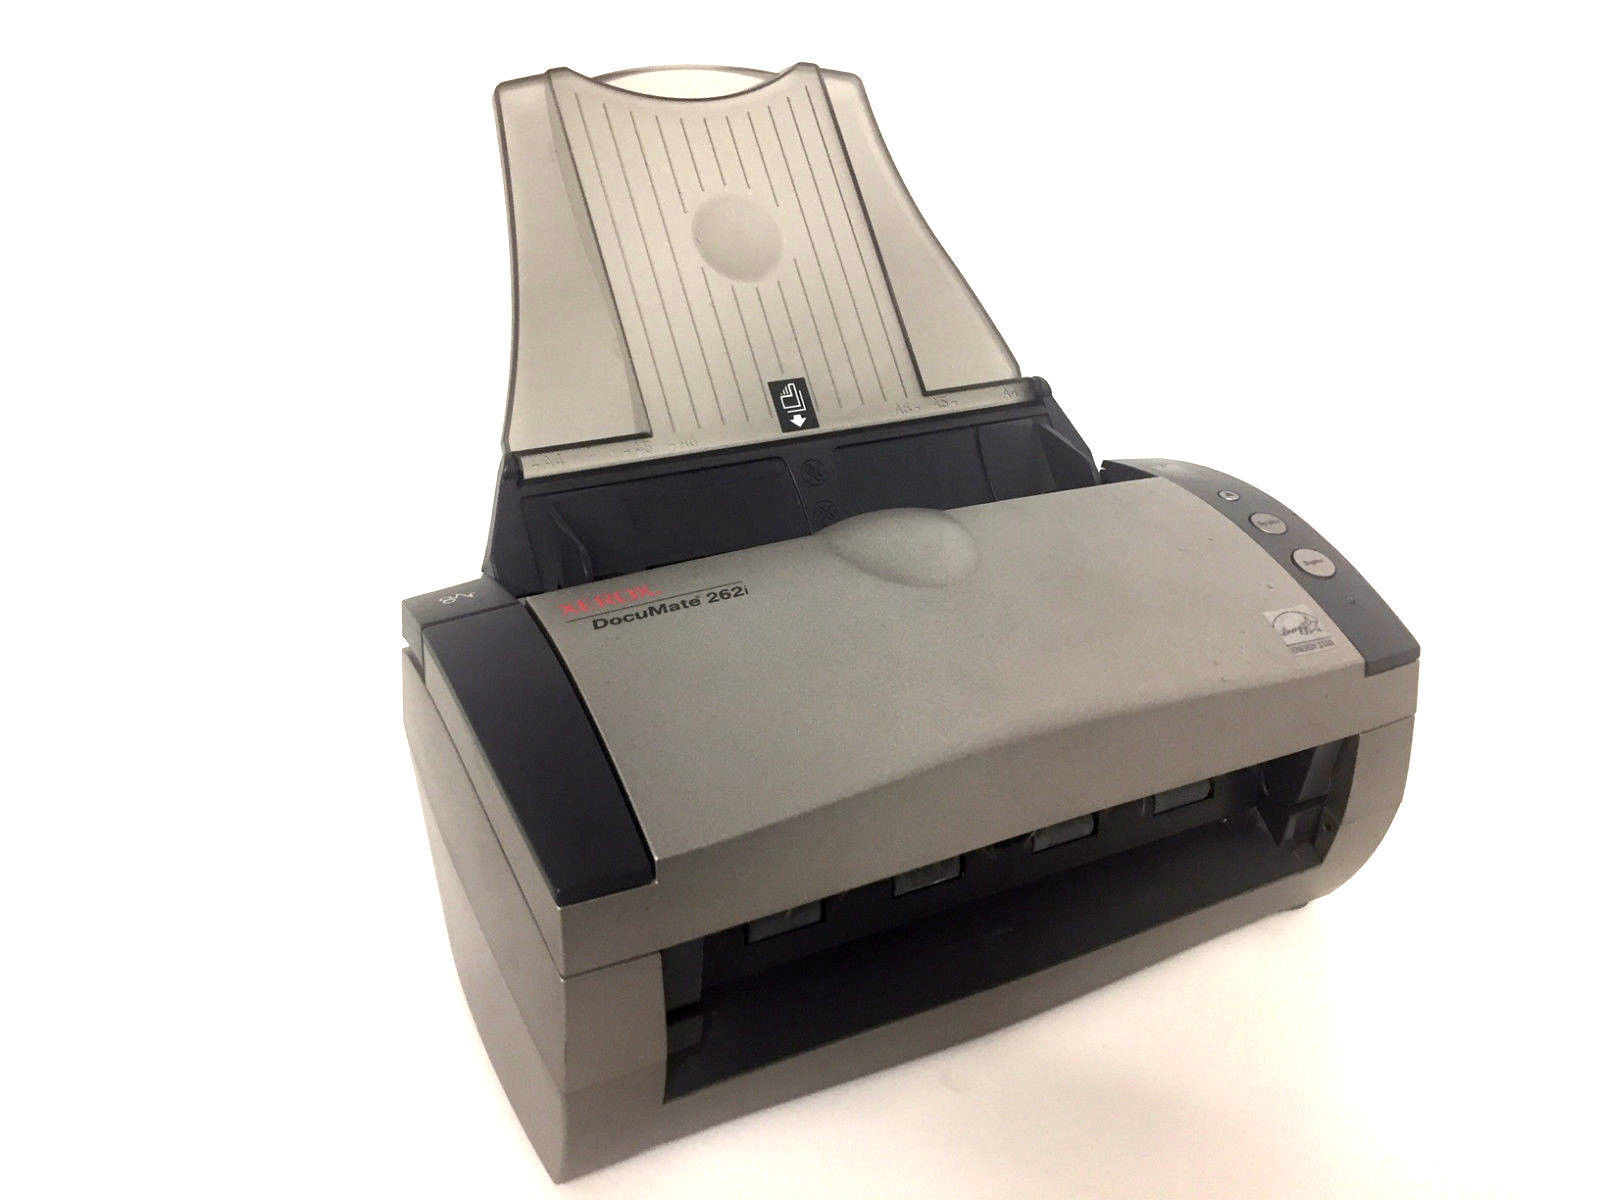 Refurbished Xerox Documate 252 Flatbed Scanner